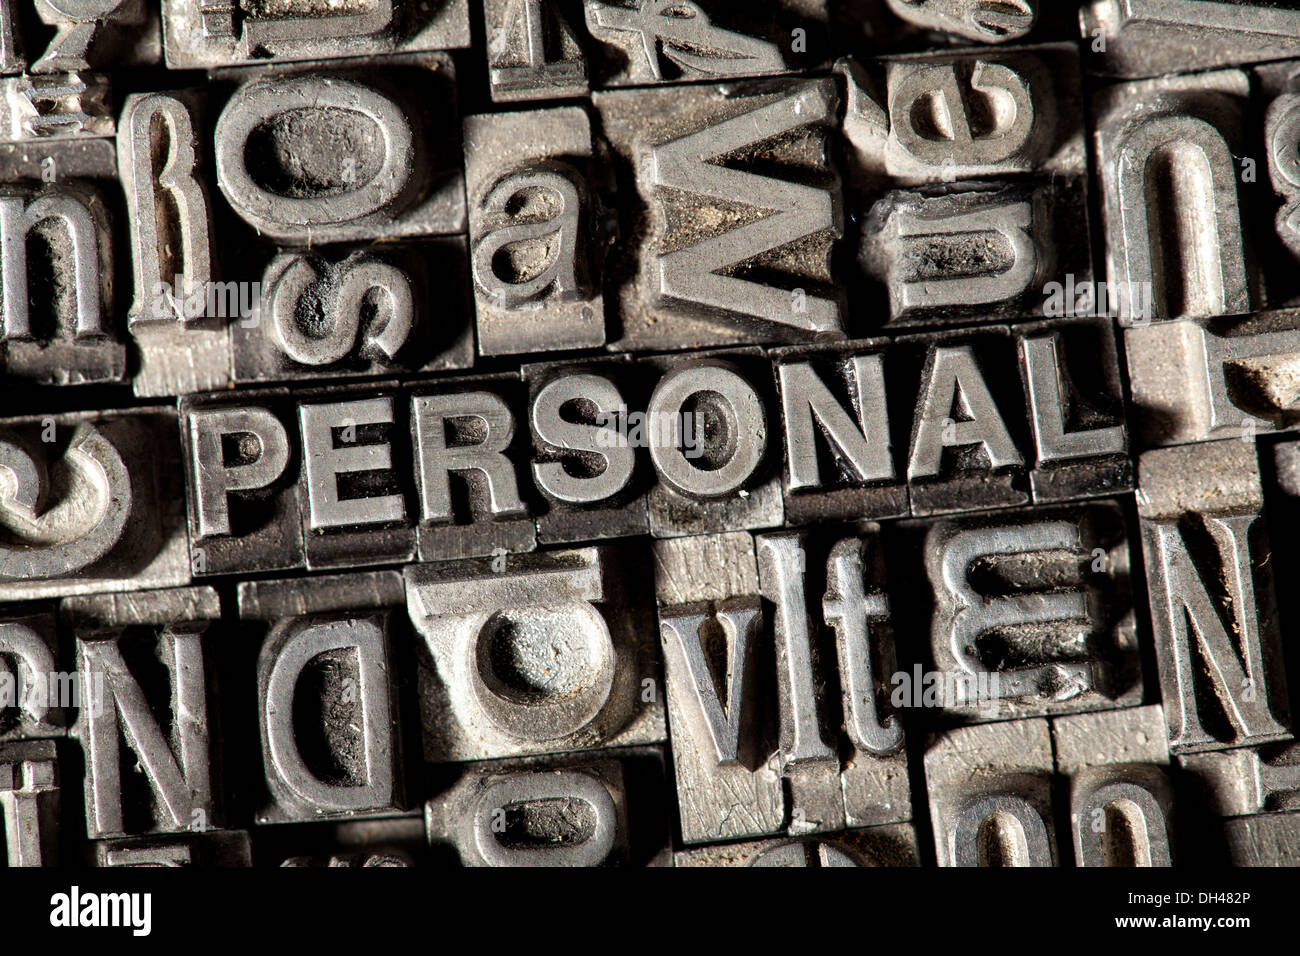 Vecchio portano lettere che compongono la parola "personal", Tedesco per 'staff' Foto Stock